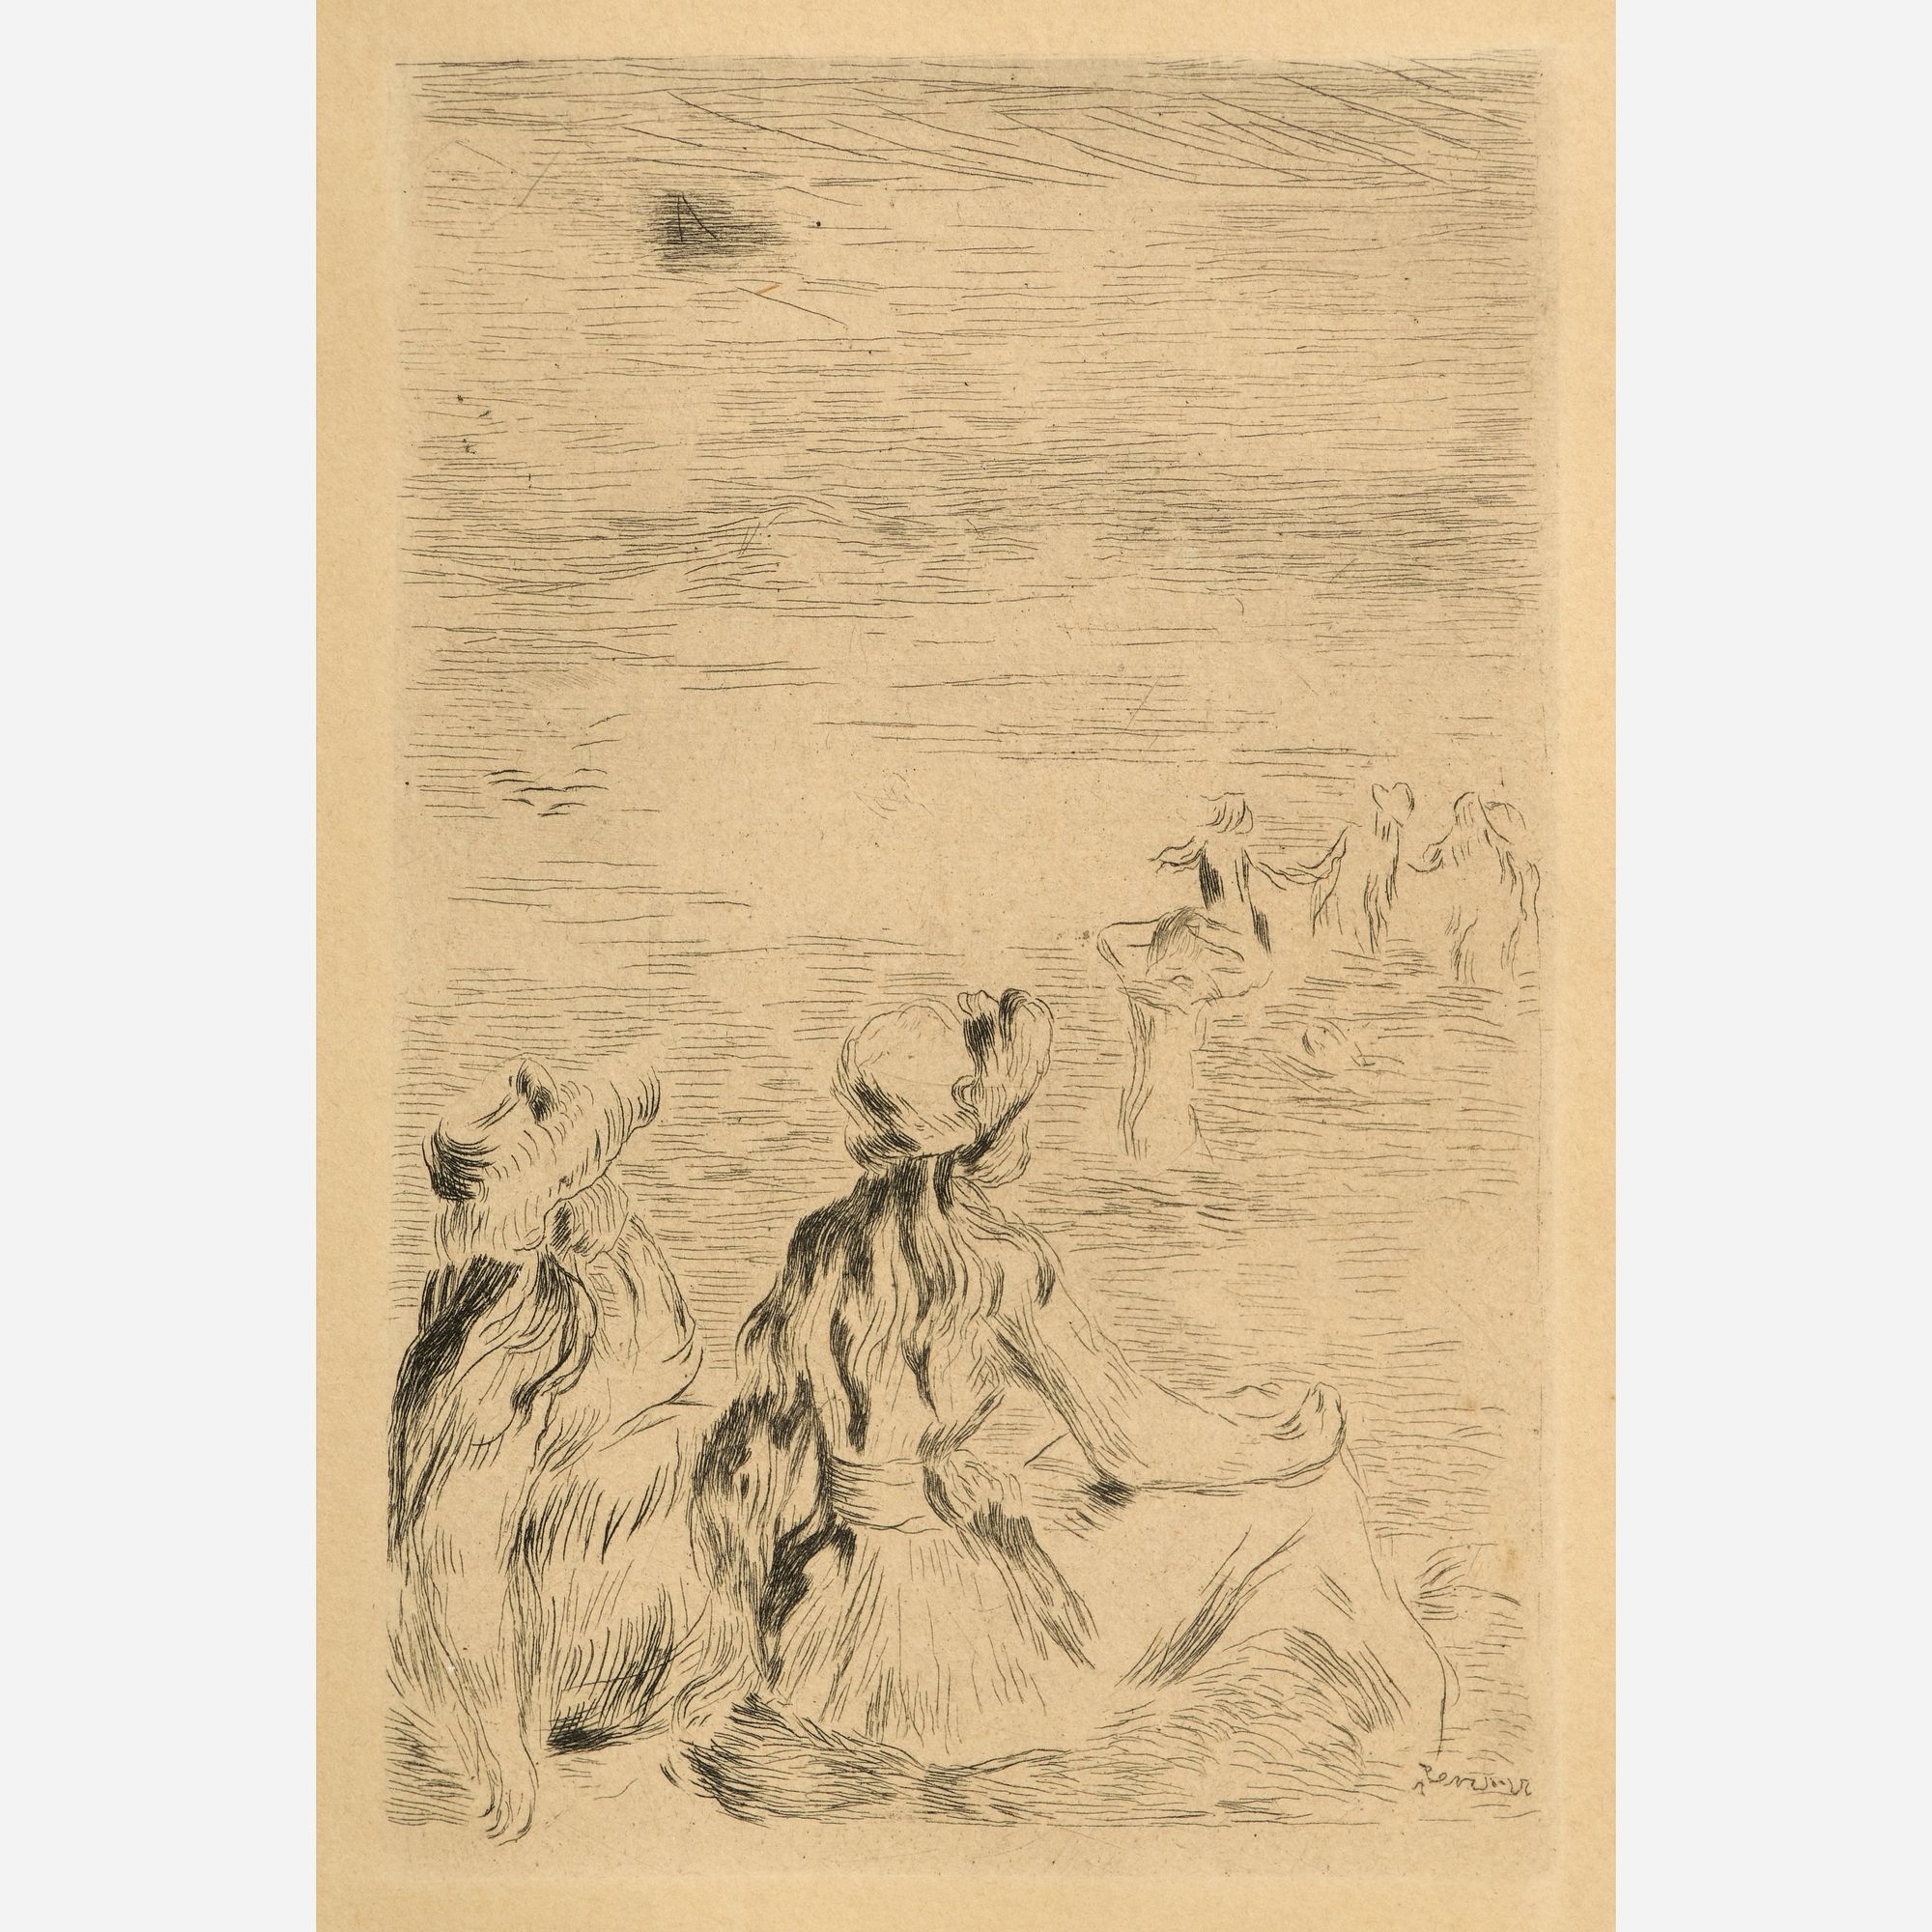 Pierre August Renoir (after) "Sur la Plage" (1892 Etching - Pierre-Auguste Renoir